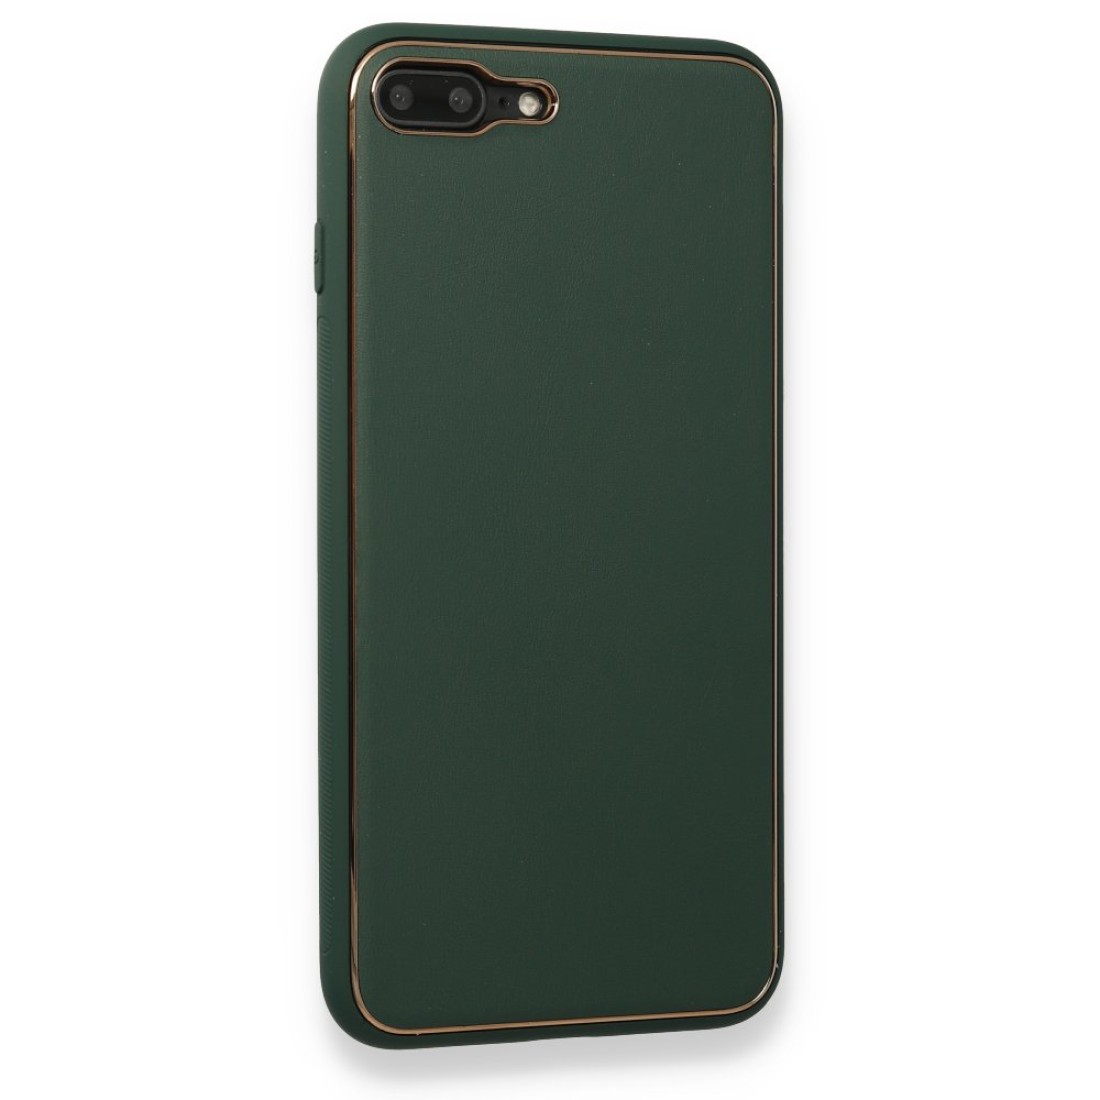 Apple iPhone 7 Plus Kılıf Coco Deri Silikon Kapak - Yeşil